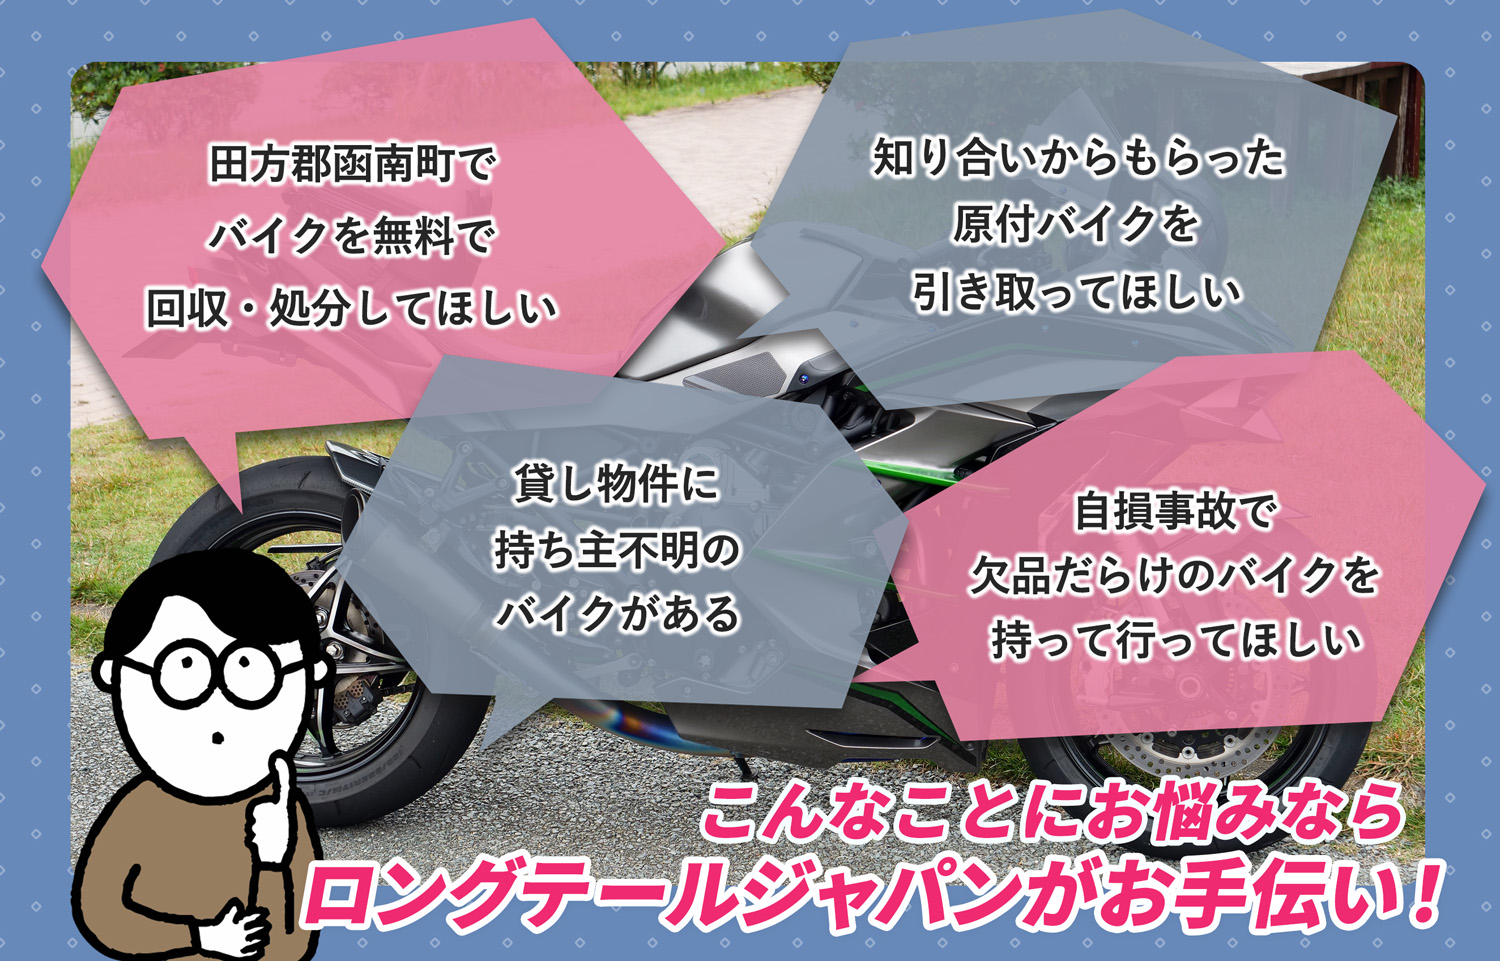 田方郡函南町でこんなバイクの処分にお困りでしたらバイク無料回収処分隊がお手伝いいたします。